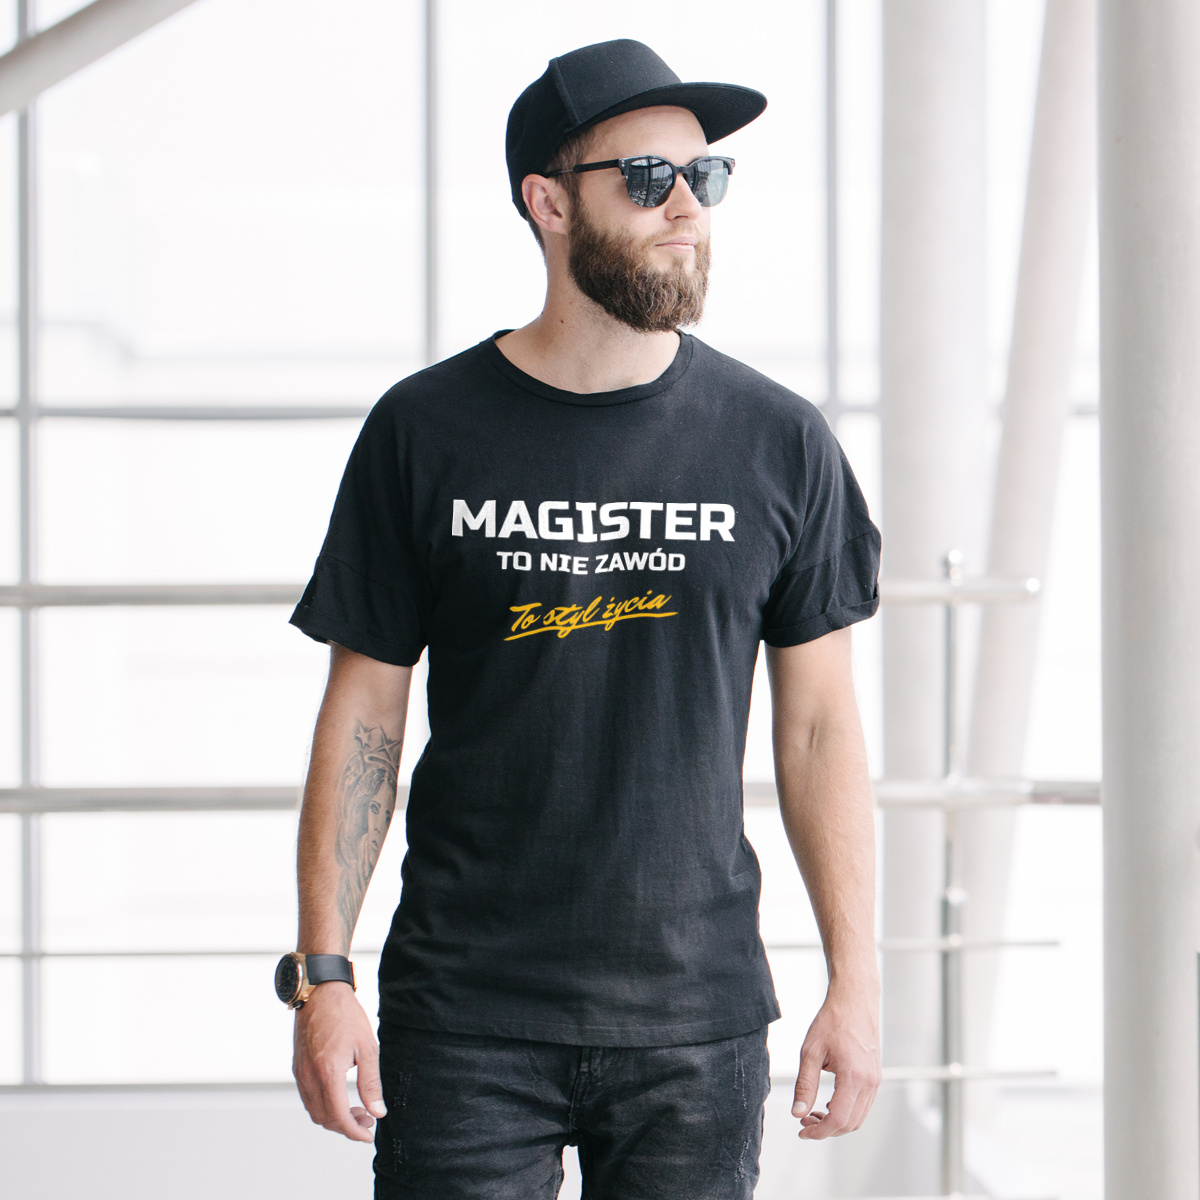 Magister To Nie Zawód - To Styl Życia - Męska Koszulka Czarna